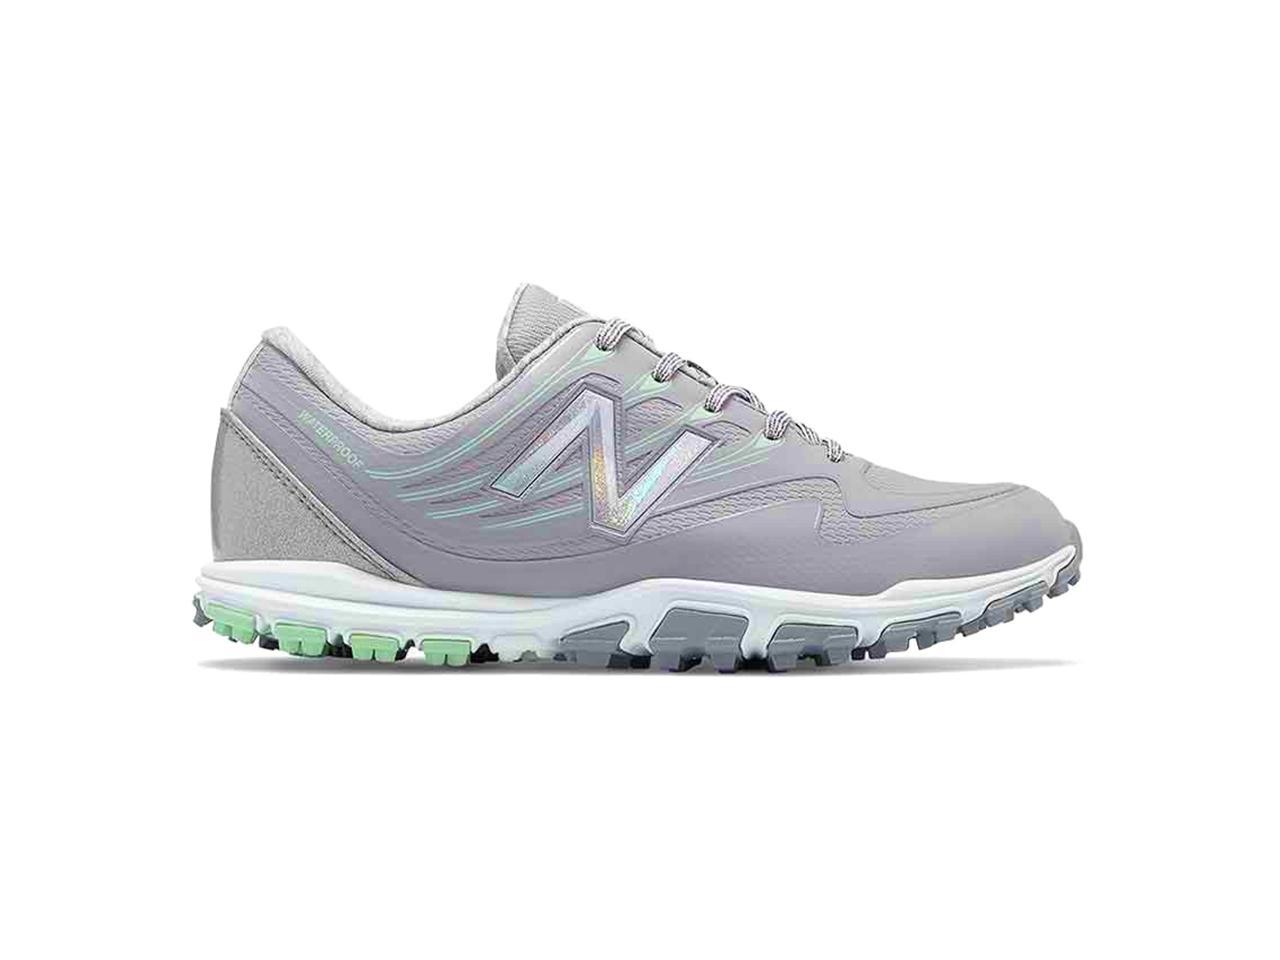 new balance nbg1005 minimus spikeless men's golf shoe